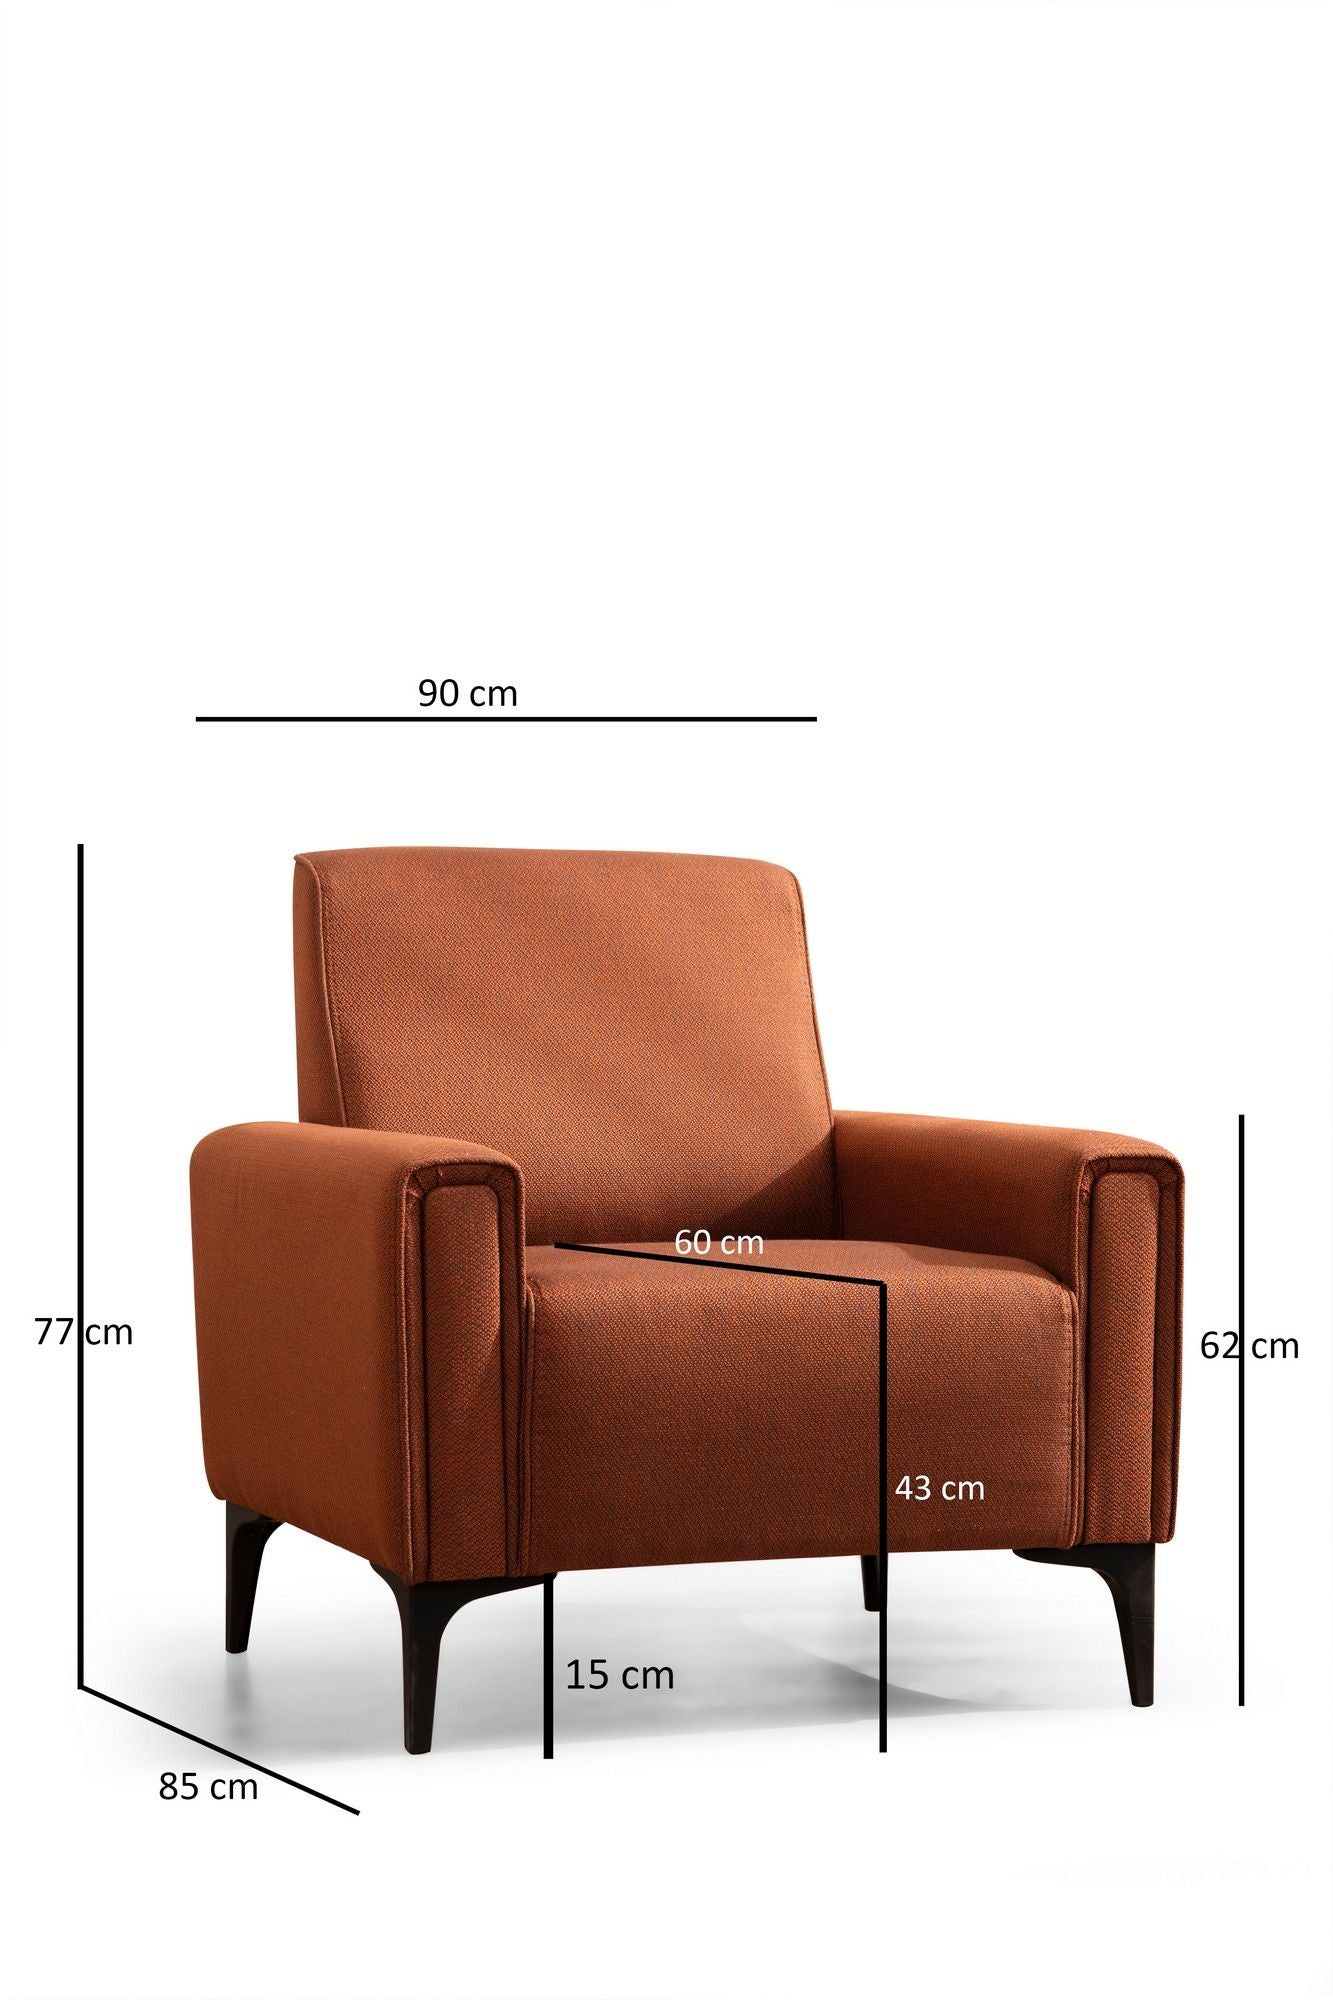 Horizon - Tile Red - 1-Seat Sofa